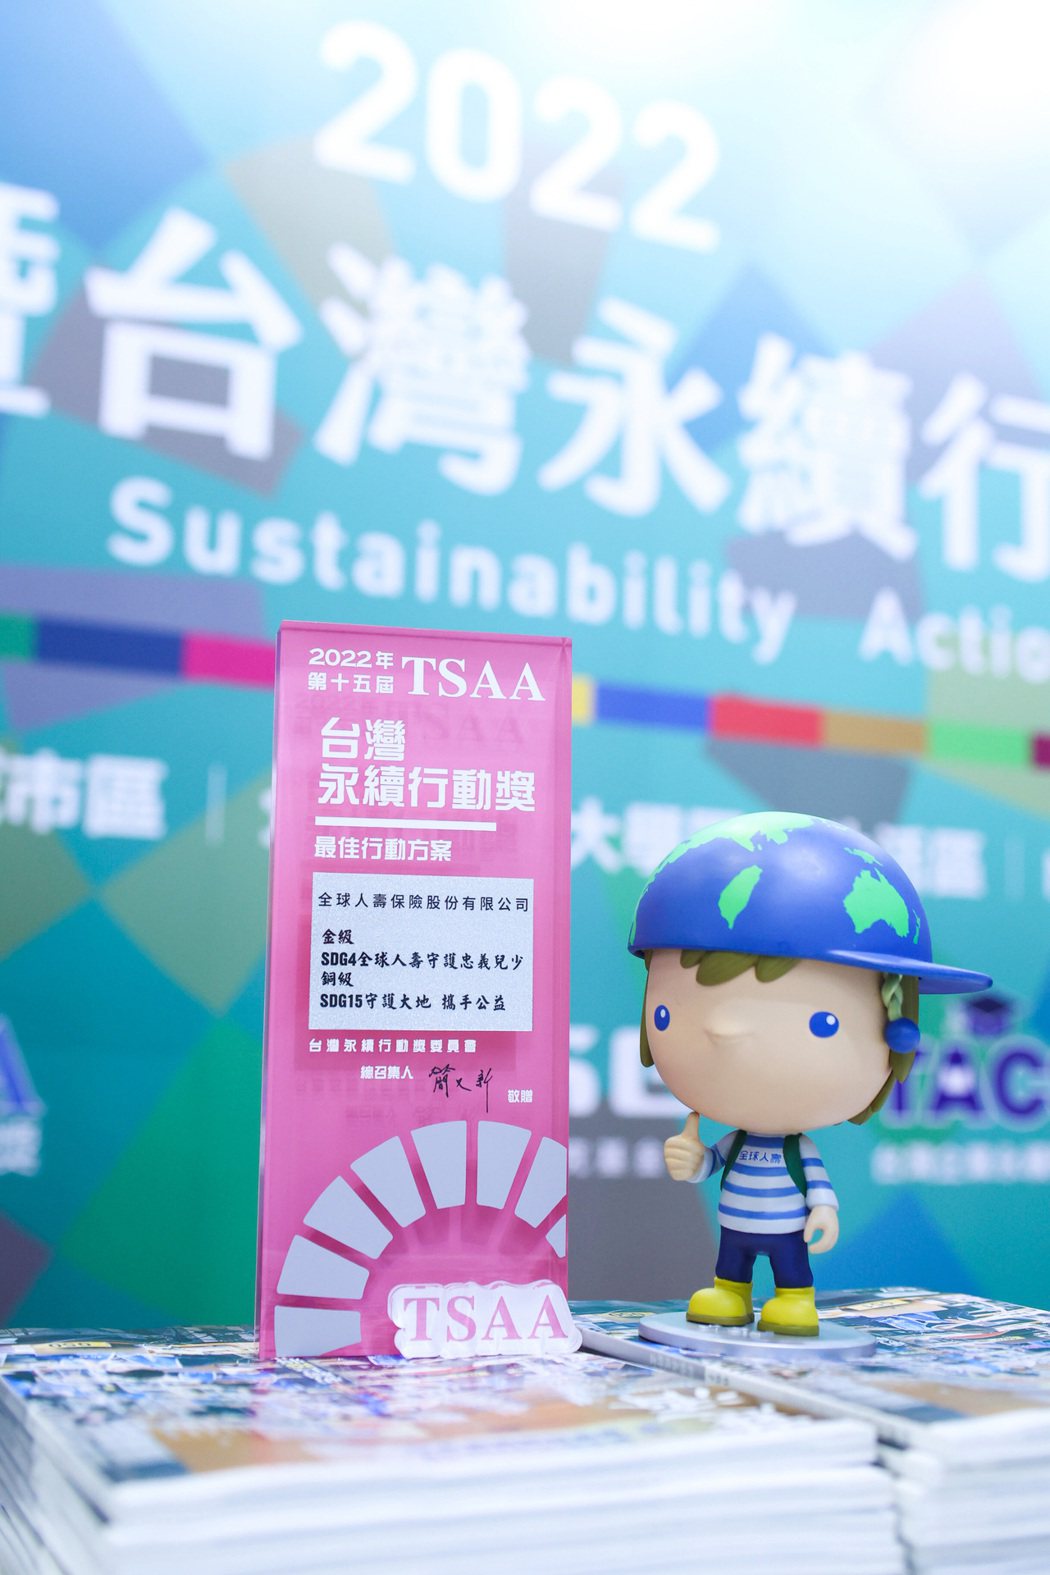 全球人壽耕耘ESG有成，榮獲第二屆臺灣永續行動獎社會共融類金獎及環境永續類銅獎。...